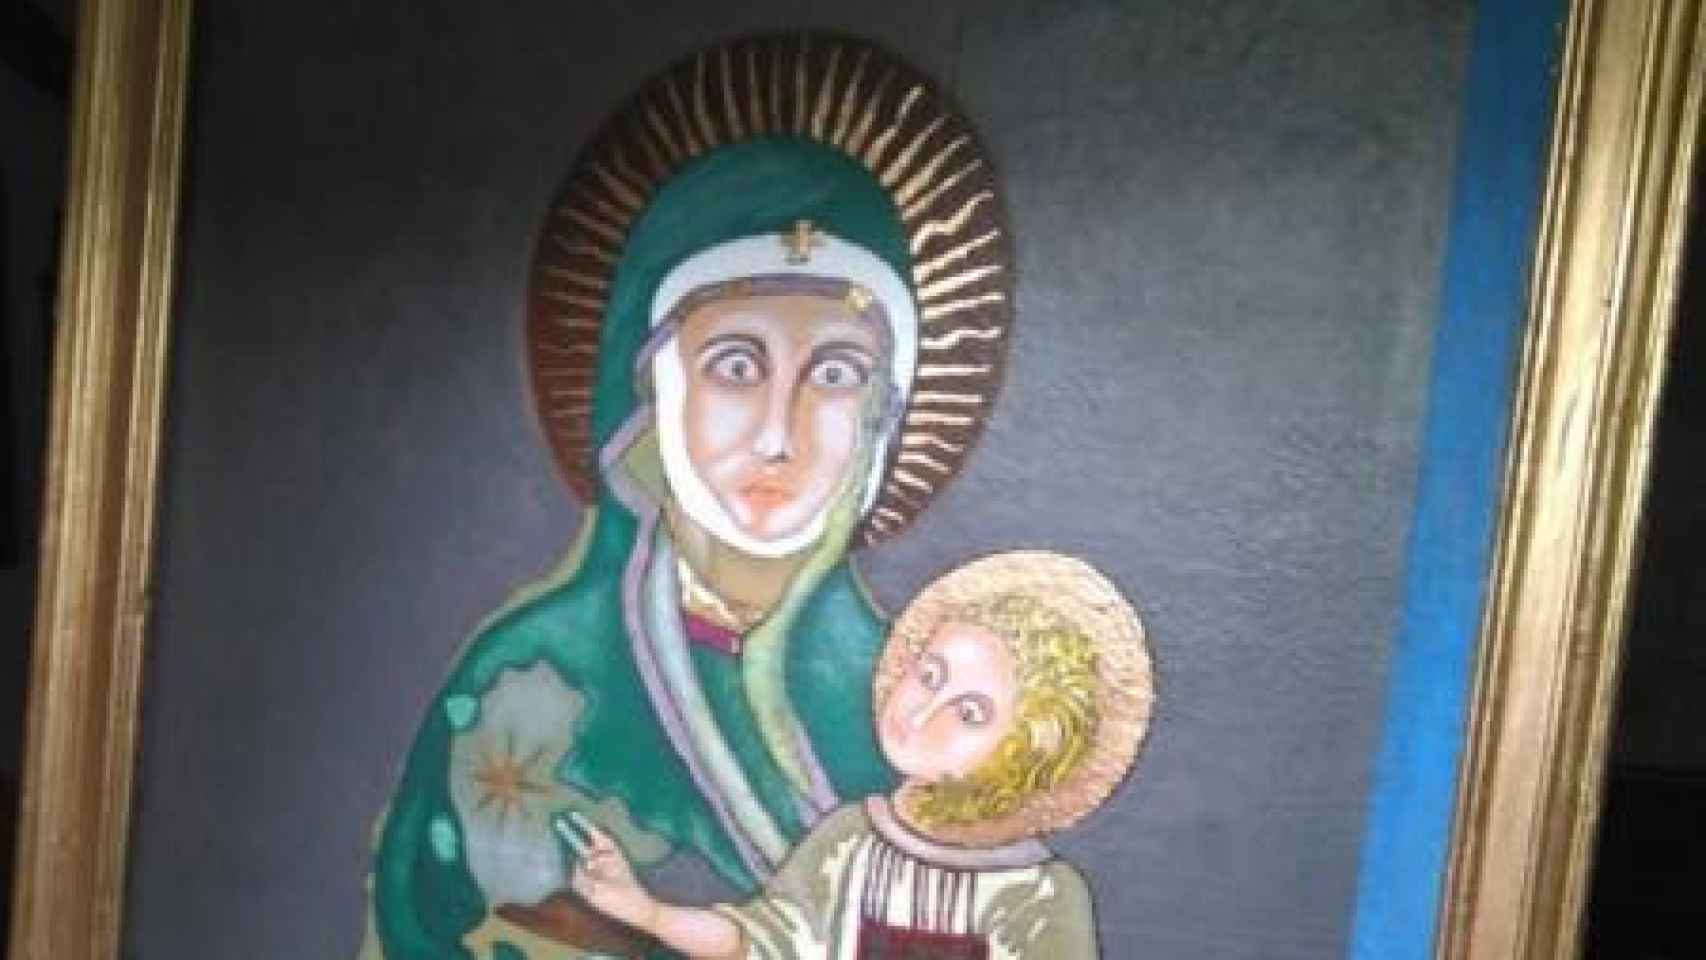 La Virgen y el Niño, interpretados por Adolfo.